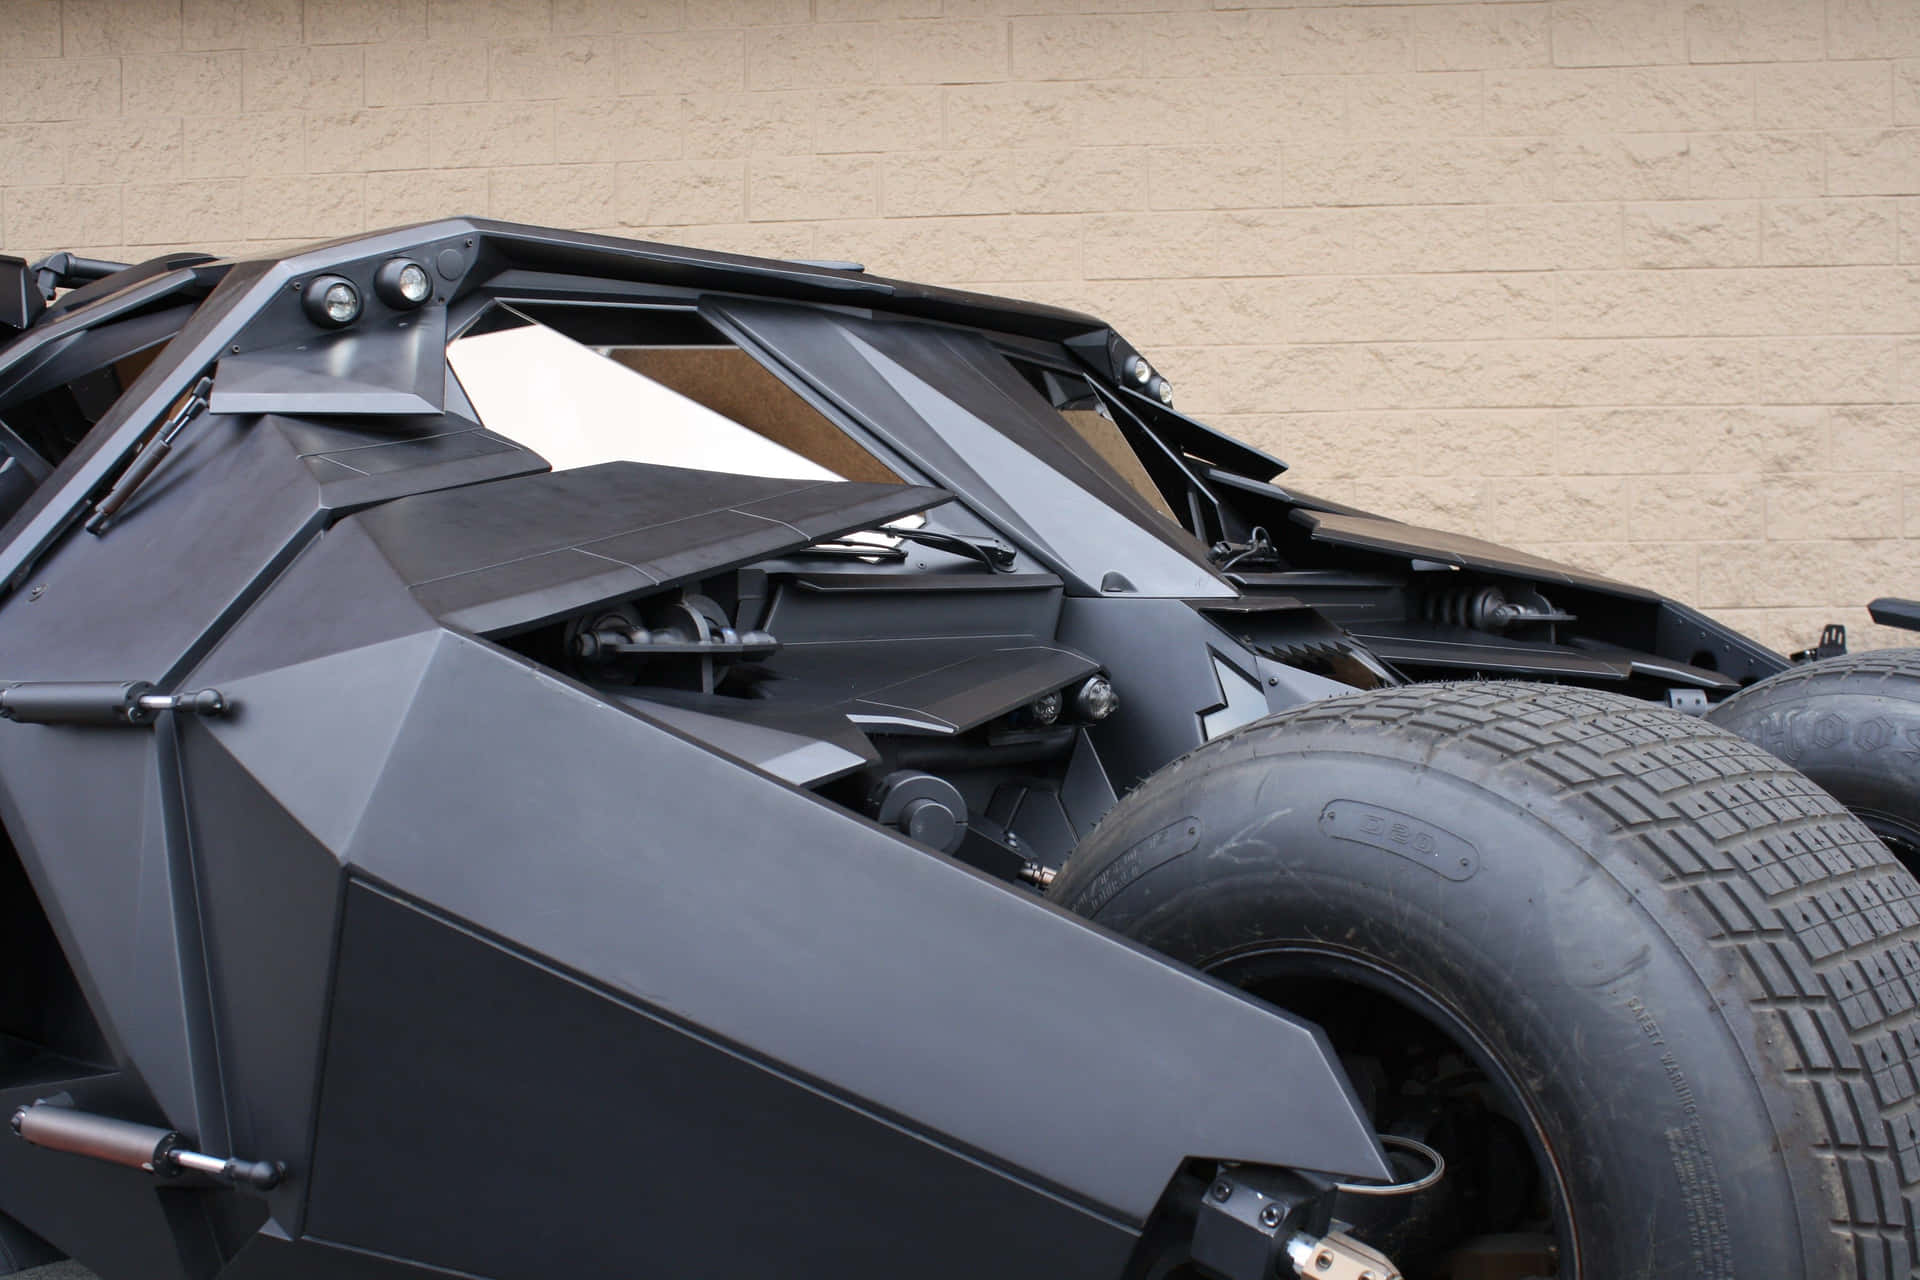 Derlegendäre Batmobile In Ultra Hd 4k